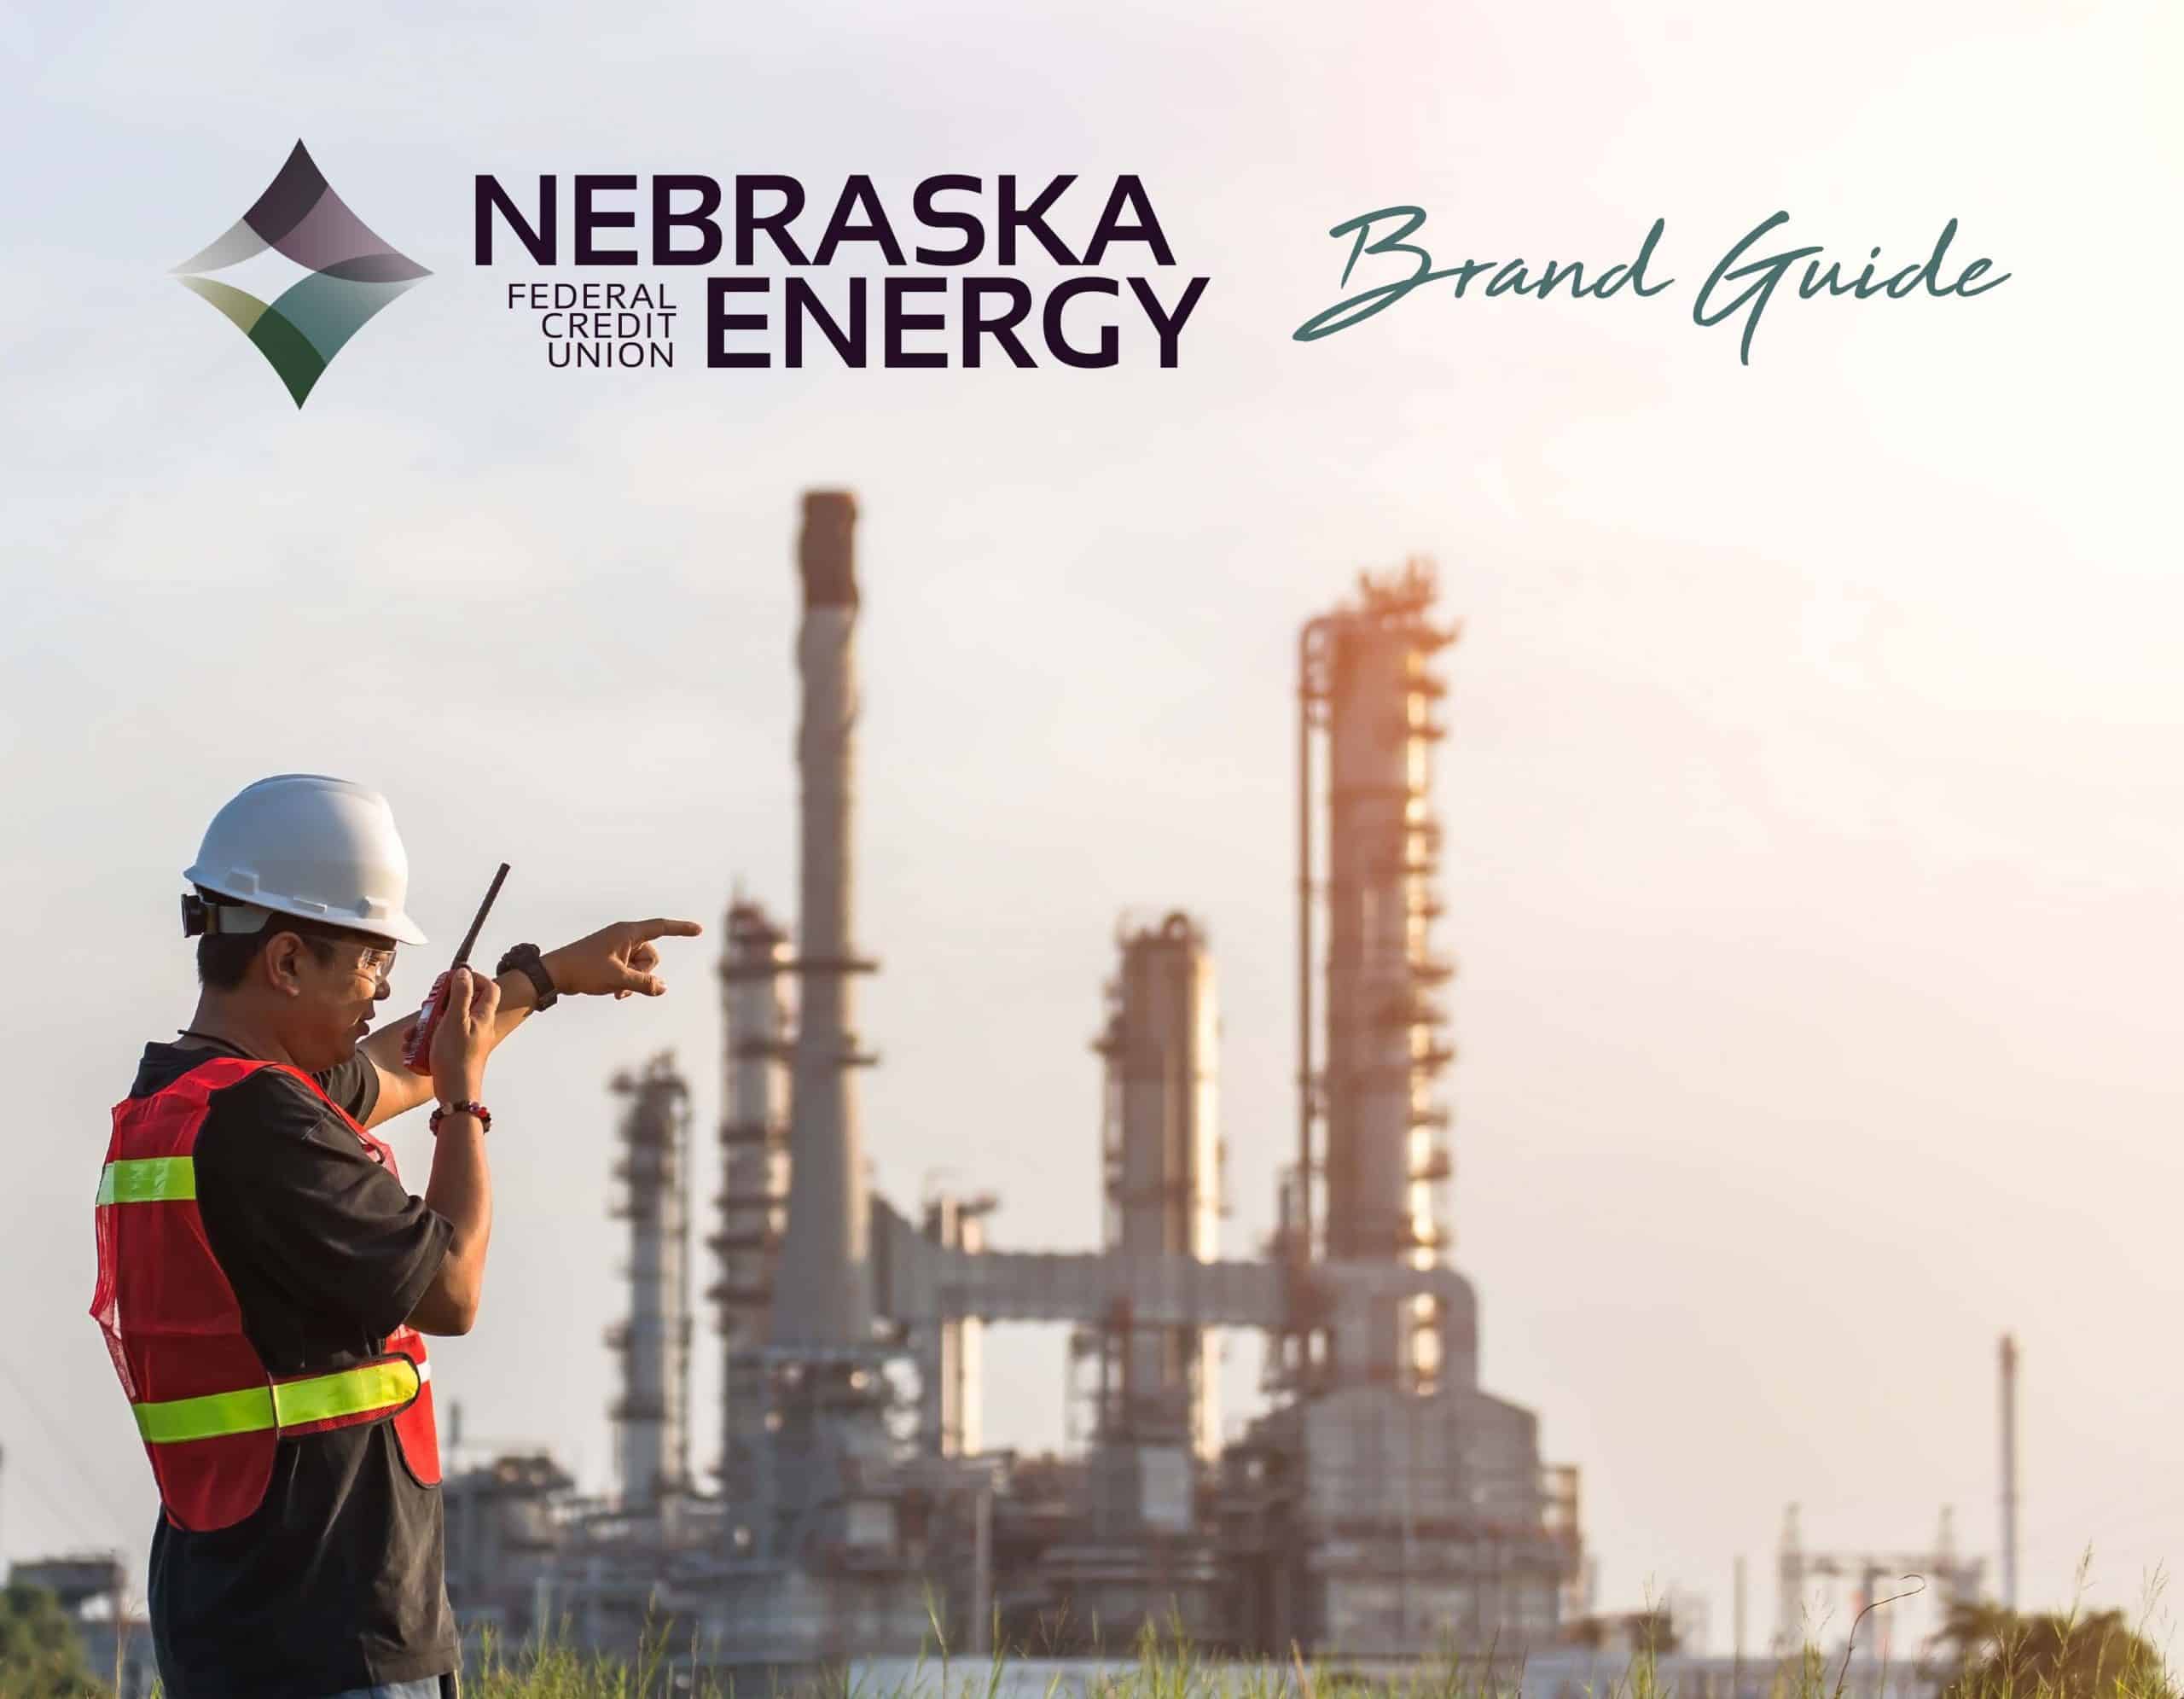 Nebraska Energy Brand Guide - Front Cover